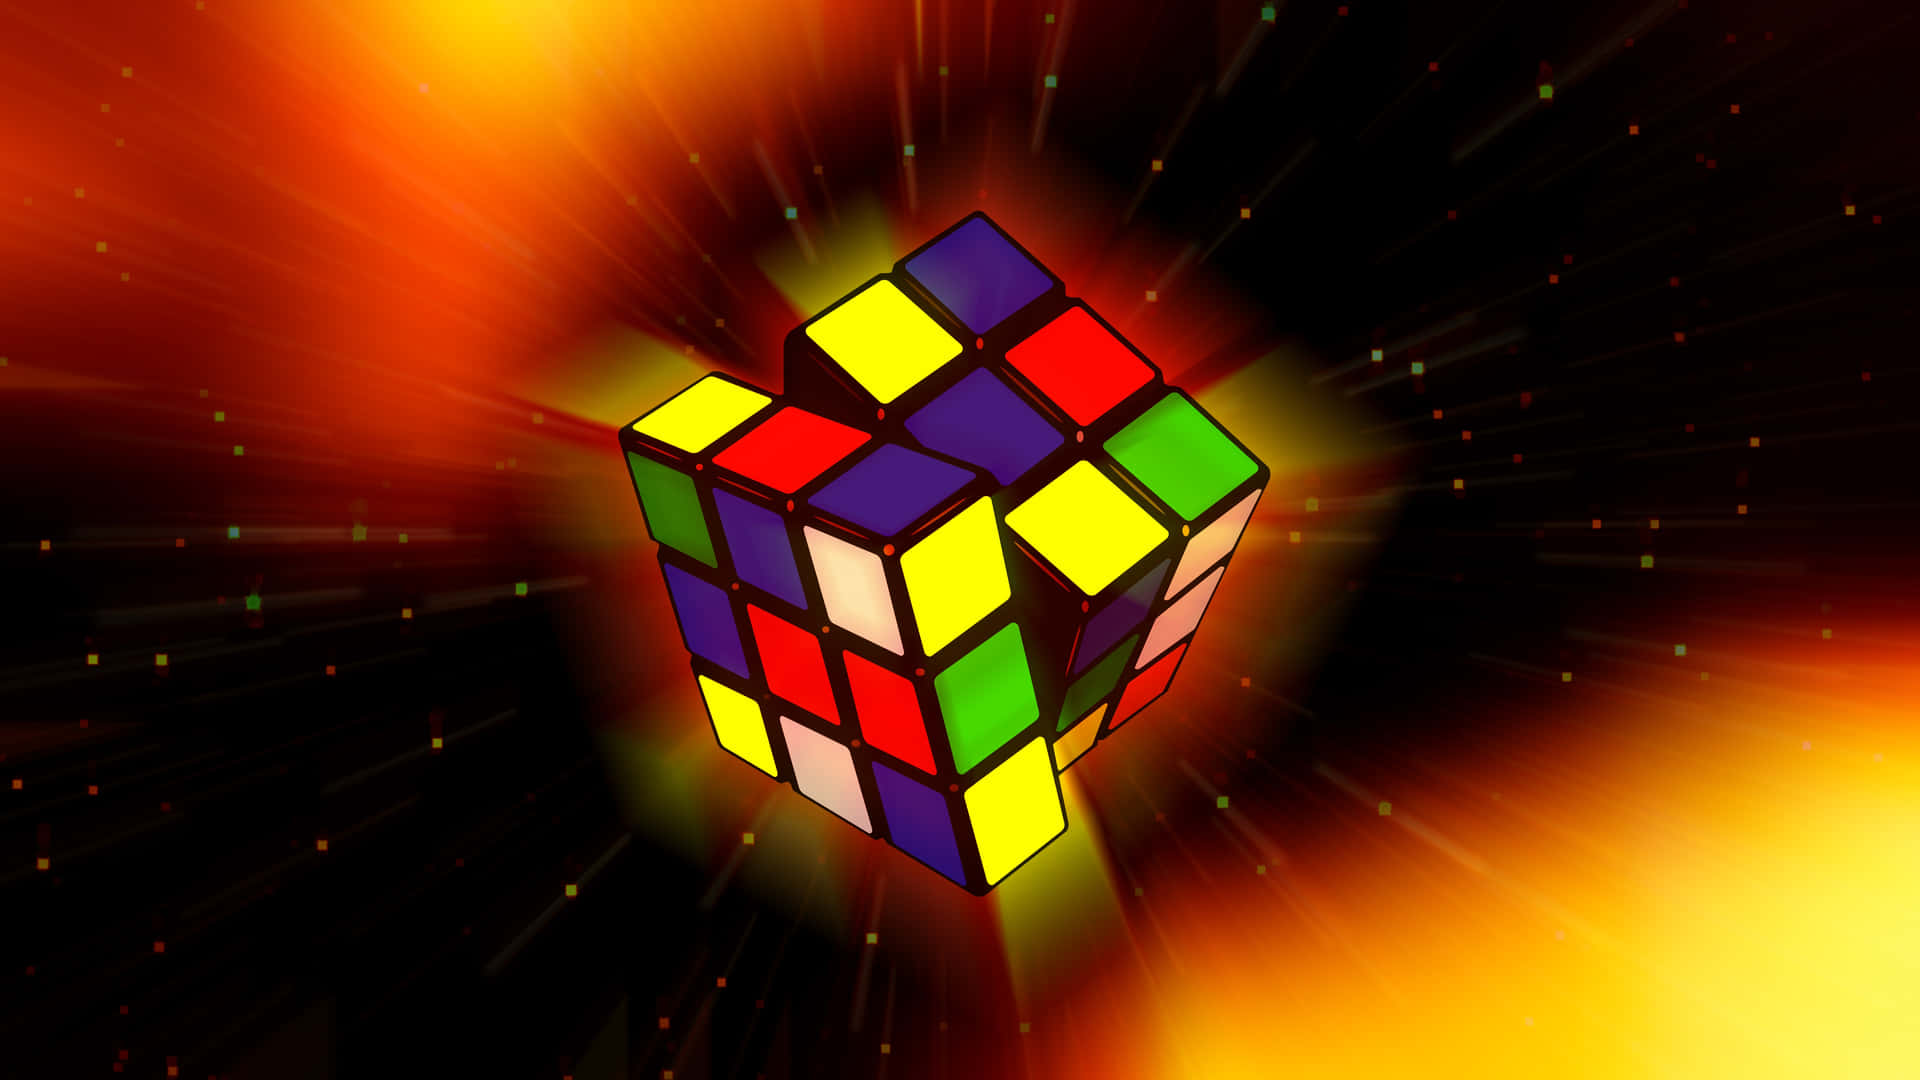 Rubik's Cube Wallpaper - Wallpapers